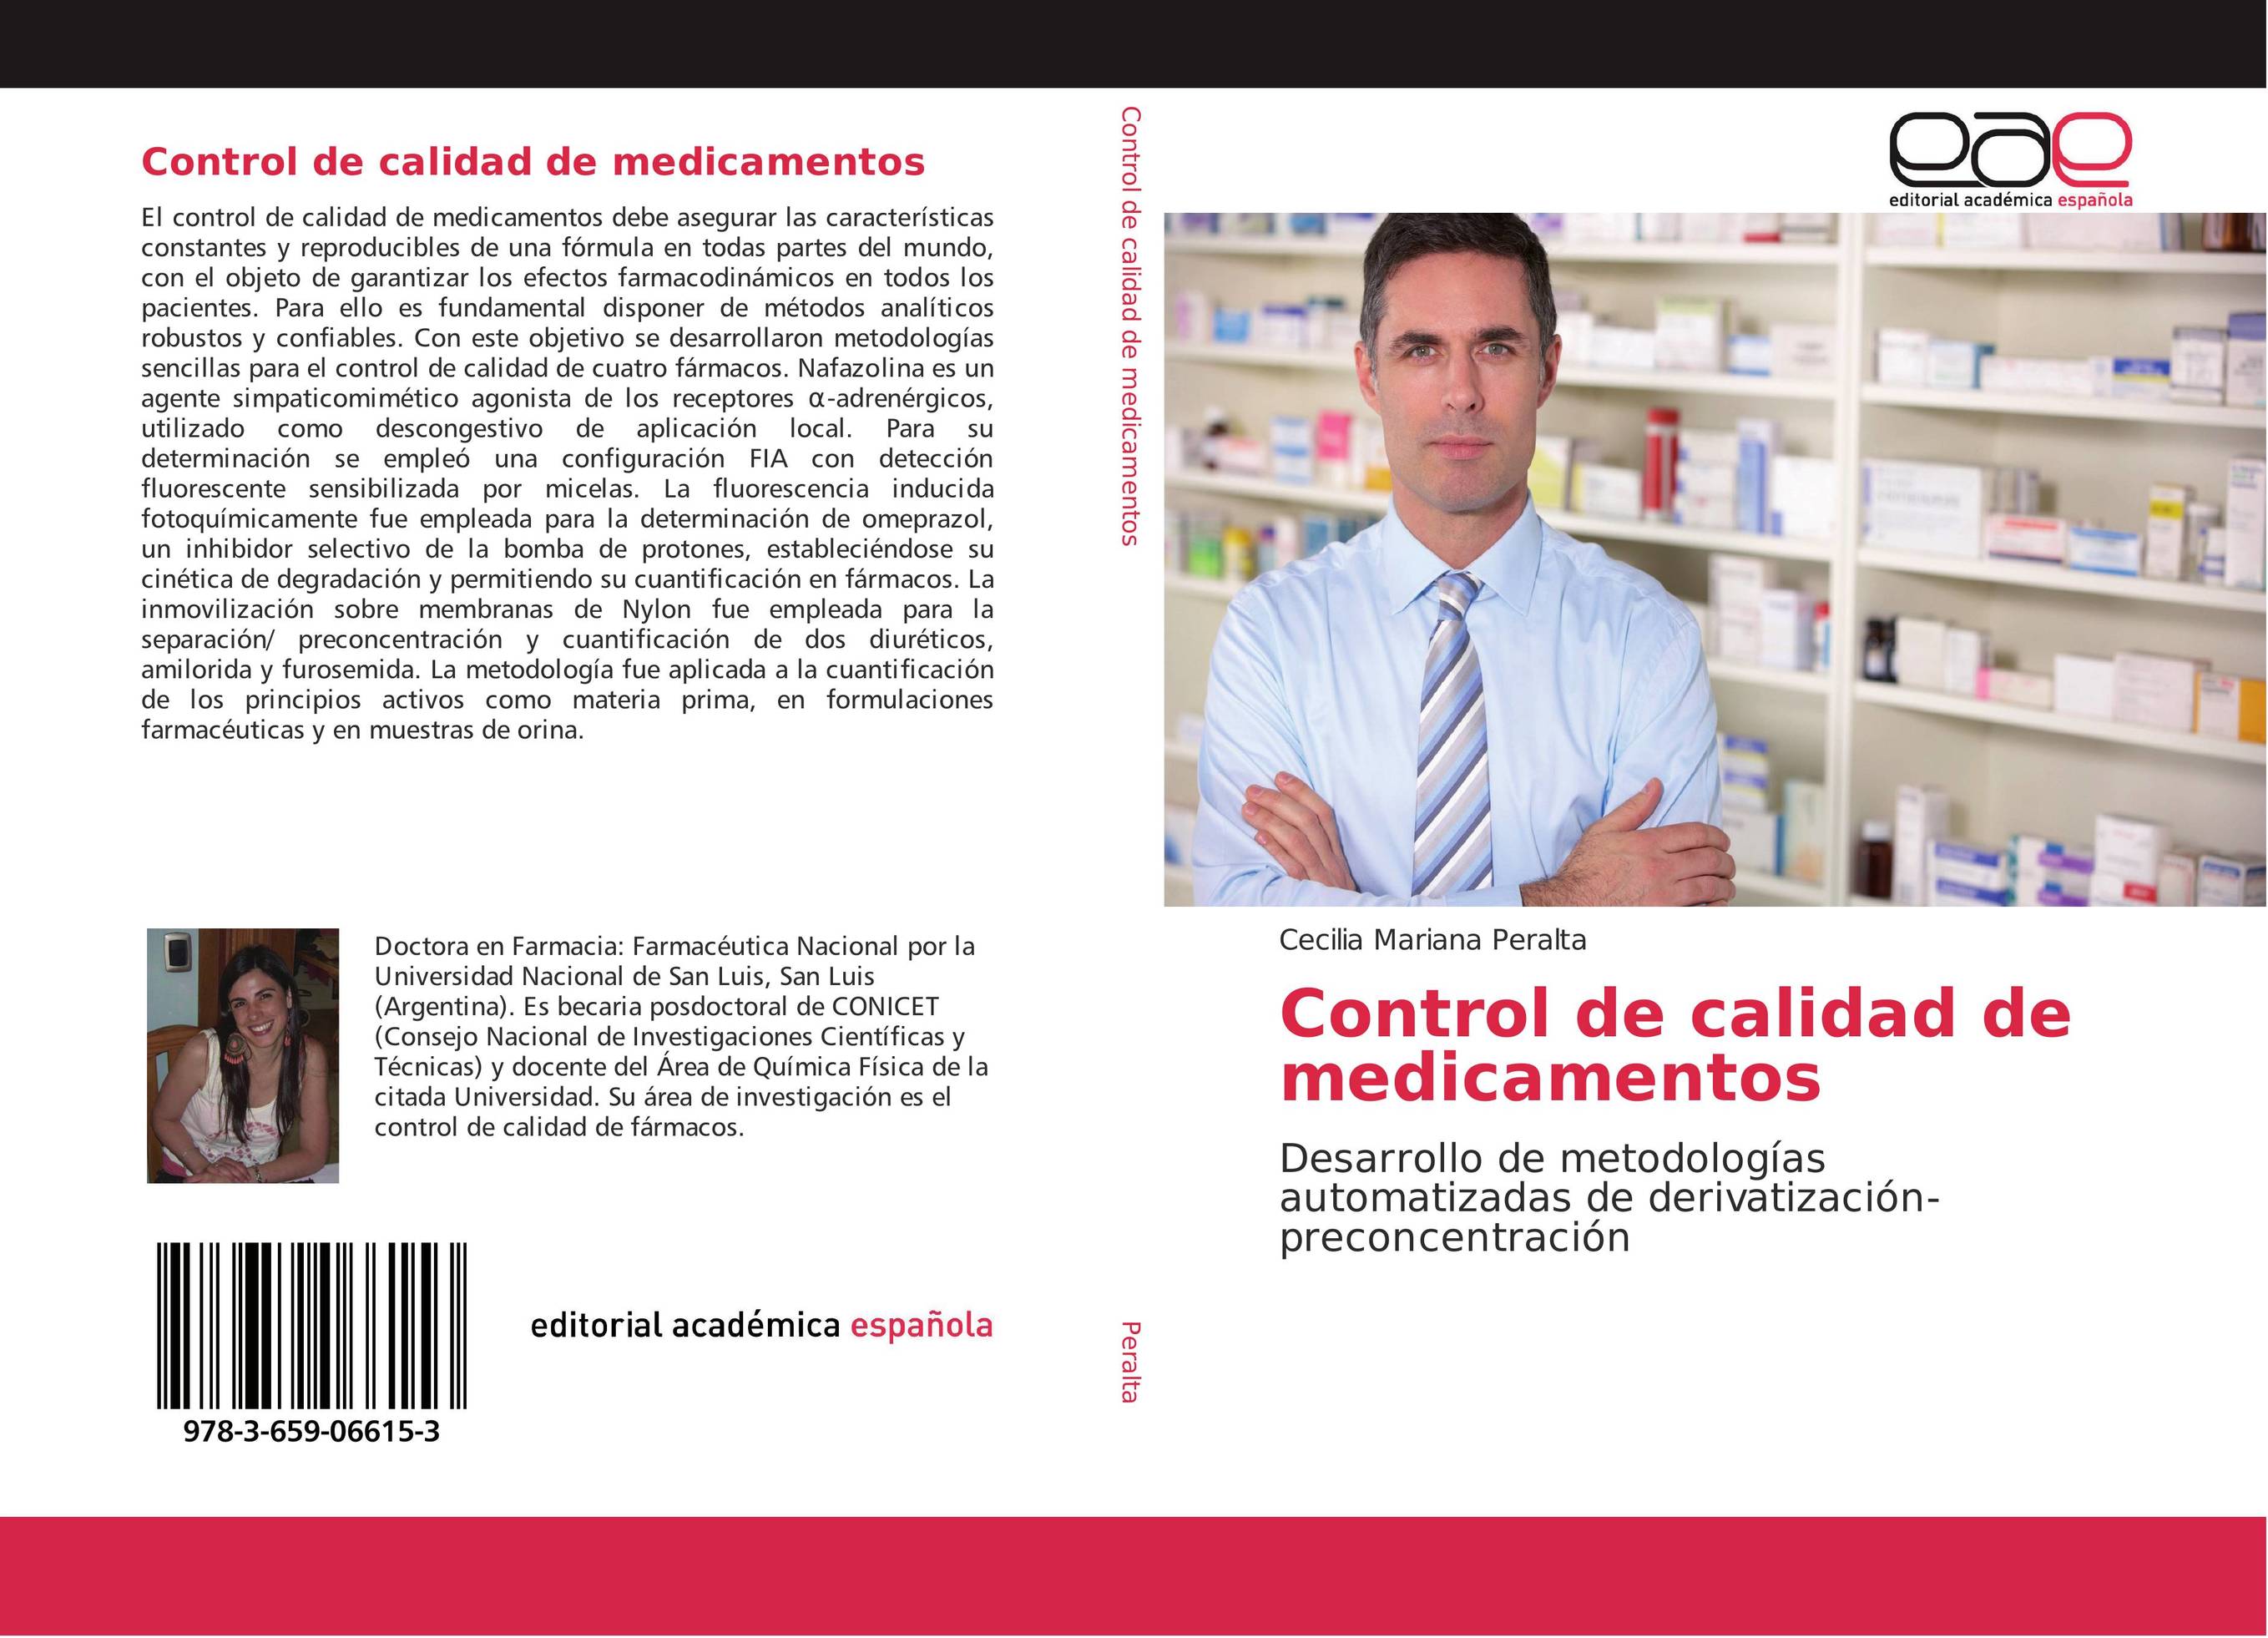 Control de calidad de medicamentos